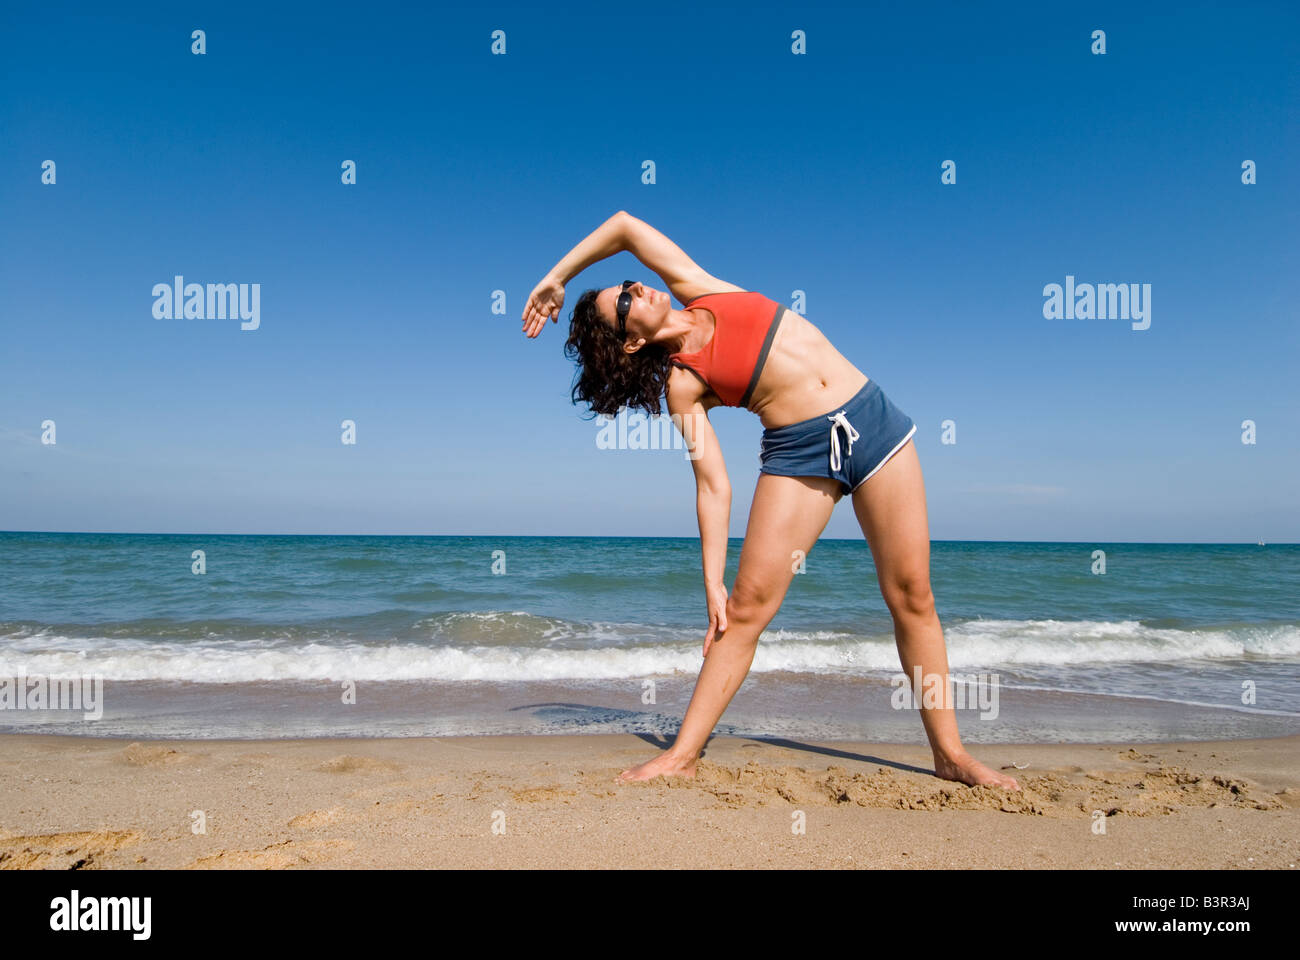 Publicado modelo fit joven haciendo ejercicios de estiramiento en una playa de arena Foto de stock